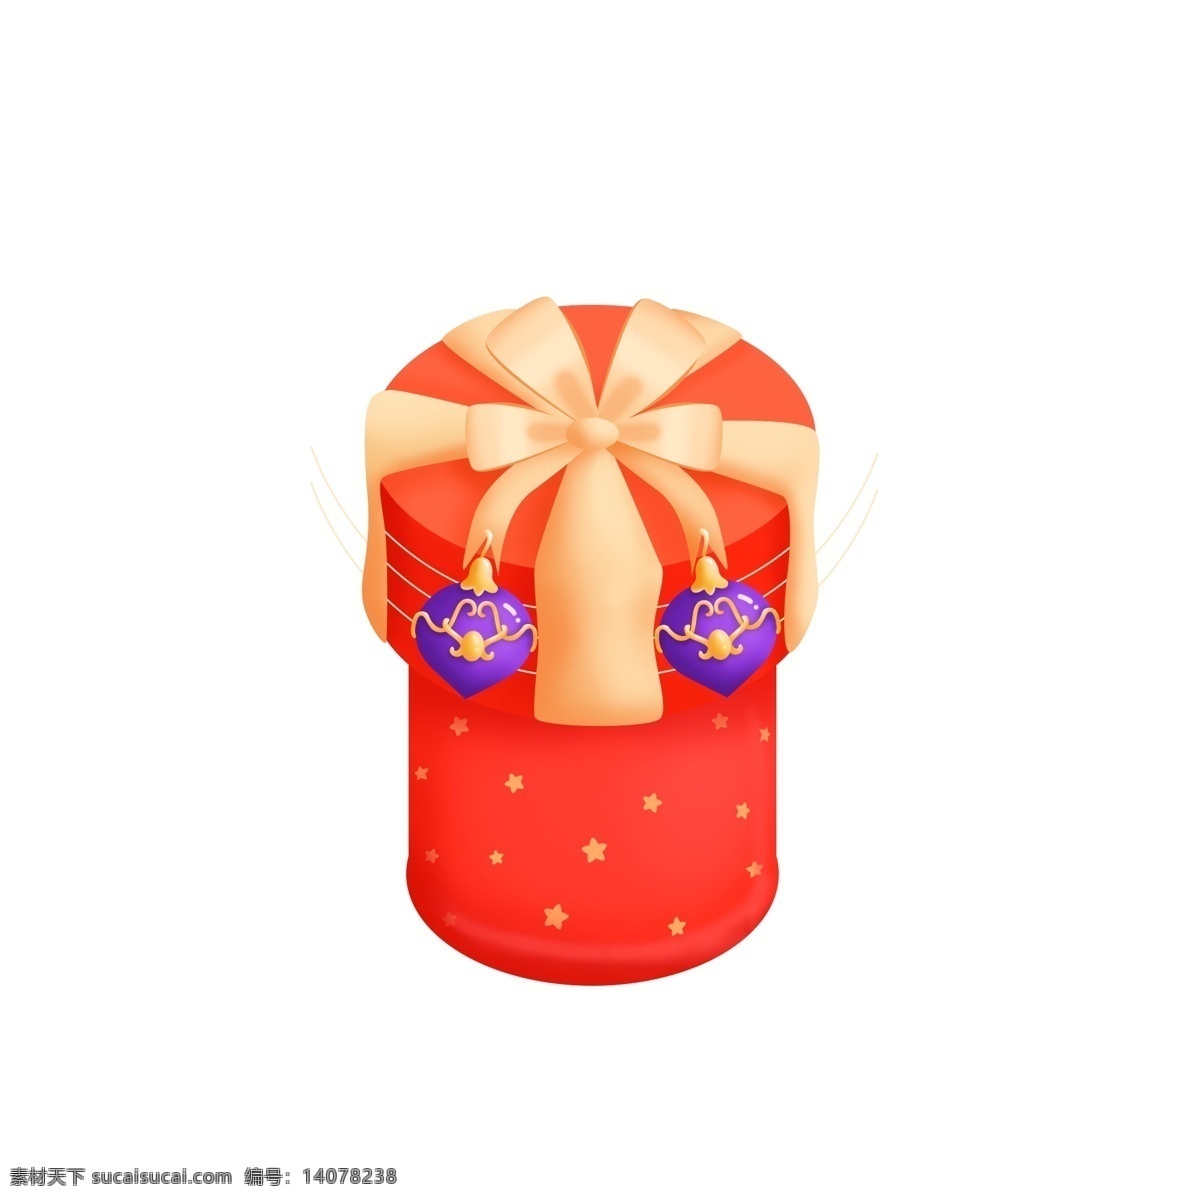 25d 立体 圣诞节 精致 红色 星星 礼物 盒 元素 礼品 礼物盒 松球 蝴蝶结 绸缎 圆筒